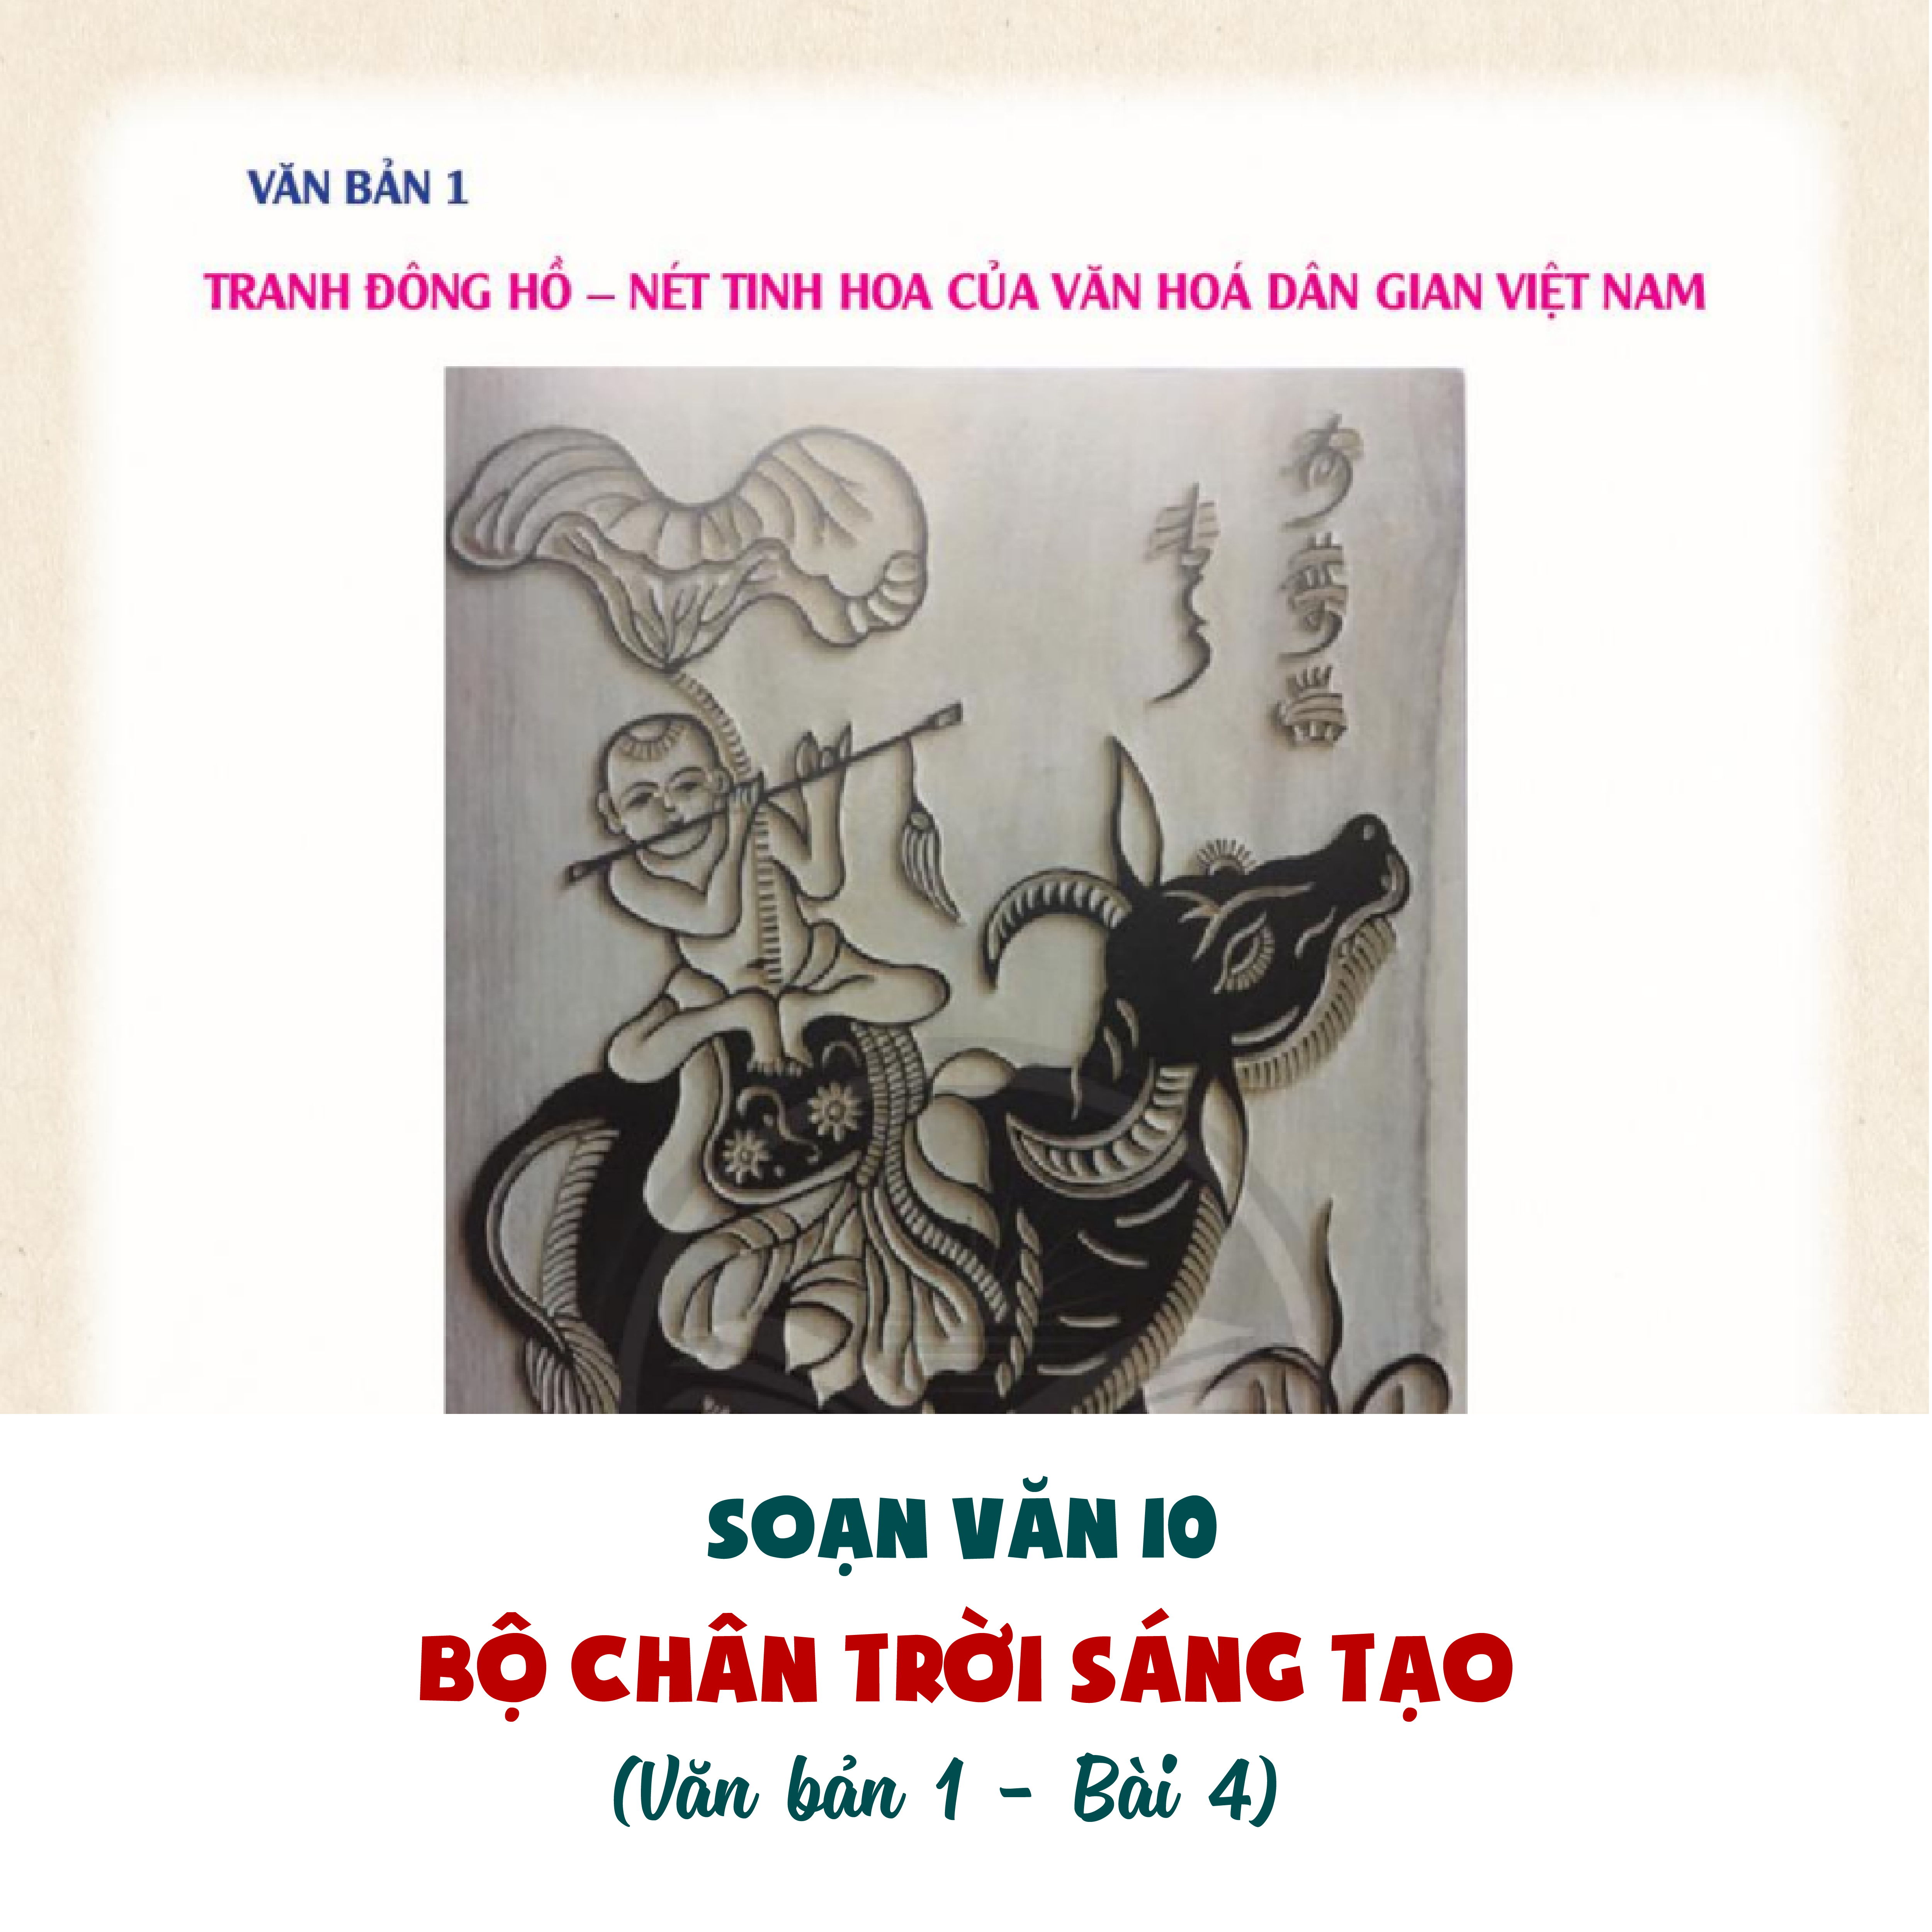 Soạn Văn lớp 10 Bộ Chân trời sáng tạo | Văn bản 1: Tranh Đông Hồ - Nét tinh hoa của văn hóa dân gian Việt Nam (Bài 4: Những di sản văn hóa)